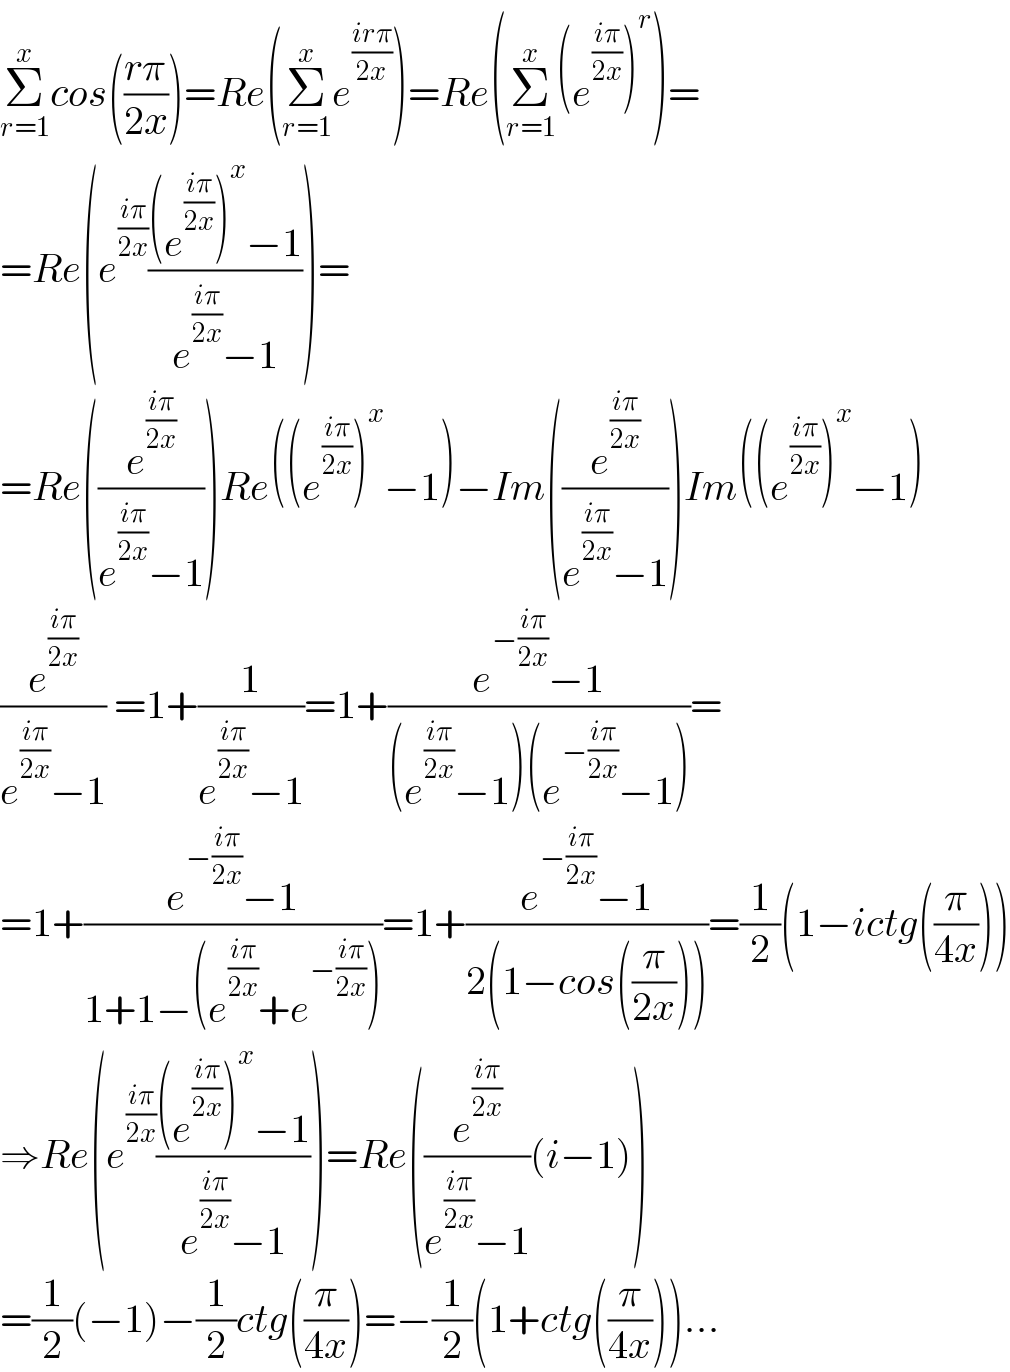 Σ_(r=1) ^x cos(((rπ)/(2x)))=Re(Σ_(r=1) ^x e^((irπ)/(2x)) )=Re(Σ_(r=1) ^x (e^((iπ)/(2x)) )^r )=  =Re(e^((iπ)/(2x)) (((e^((iπ)/(2x)) )^x −1)/(e^((iπ)/(2x)) −1)))=  =Re((e^((iπ)/(2x)) /(e^((iπ)/(2x)) −1)))Re((e^((iπ)/(2x)) )^x −1)−Im((e^((iπ)/(2x)) /(e^((iπ)/(2x)) −1)))Im((e^((iπ)/(2x)) )^x −1)  (e^((iπ)/(2x)) /(e^((iπ)/(2x)) −1)) =1+(1/(e^((iπ)/(2x)) −1))=1+((e^(−((iπ)/(2x))) −1)/((e^((iπ)/(2x)) −1)(e^(−((iπ)/(2x))) −1)))=  =1+((e^(−((iπ)/(2x))) −1)/(1+1−(e^((iπ)/(2x)) +e^(−((iπ)/(2x))) )))=1+((e^(−((iπ)/(2x))) −1)/(2(1−cos((π/(2x))))))=(1/2)(1−ictg((π/(4x))))  ⇒Re(e^((iπ)/(2x)) (((e^((iπ)/(2x)) )^x −1)/(e^((iπ)/(2x)) −1)))=Re((e^((iπ)/(2x)) /(e^((iπ)/(2x)) −1))(i−1))  =(1/2)(−1)−(1/2)ctg((π/(4x)))=−(1/2)(1+ctg((π/(4x))))...  